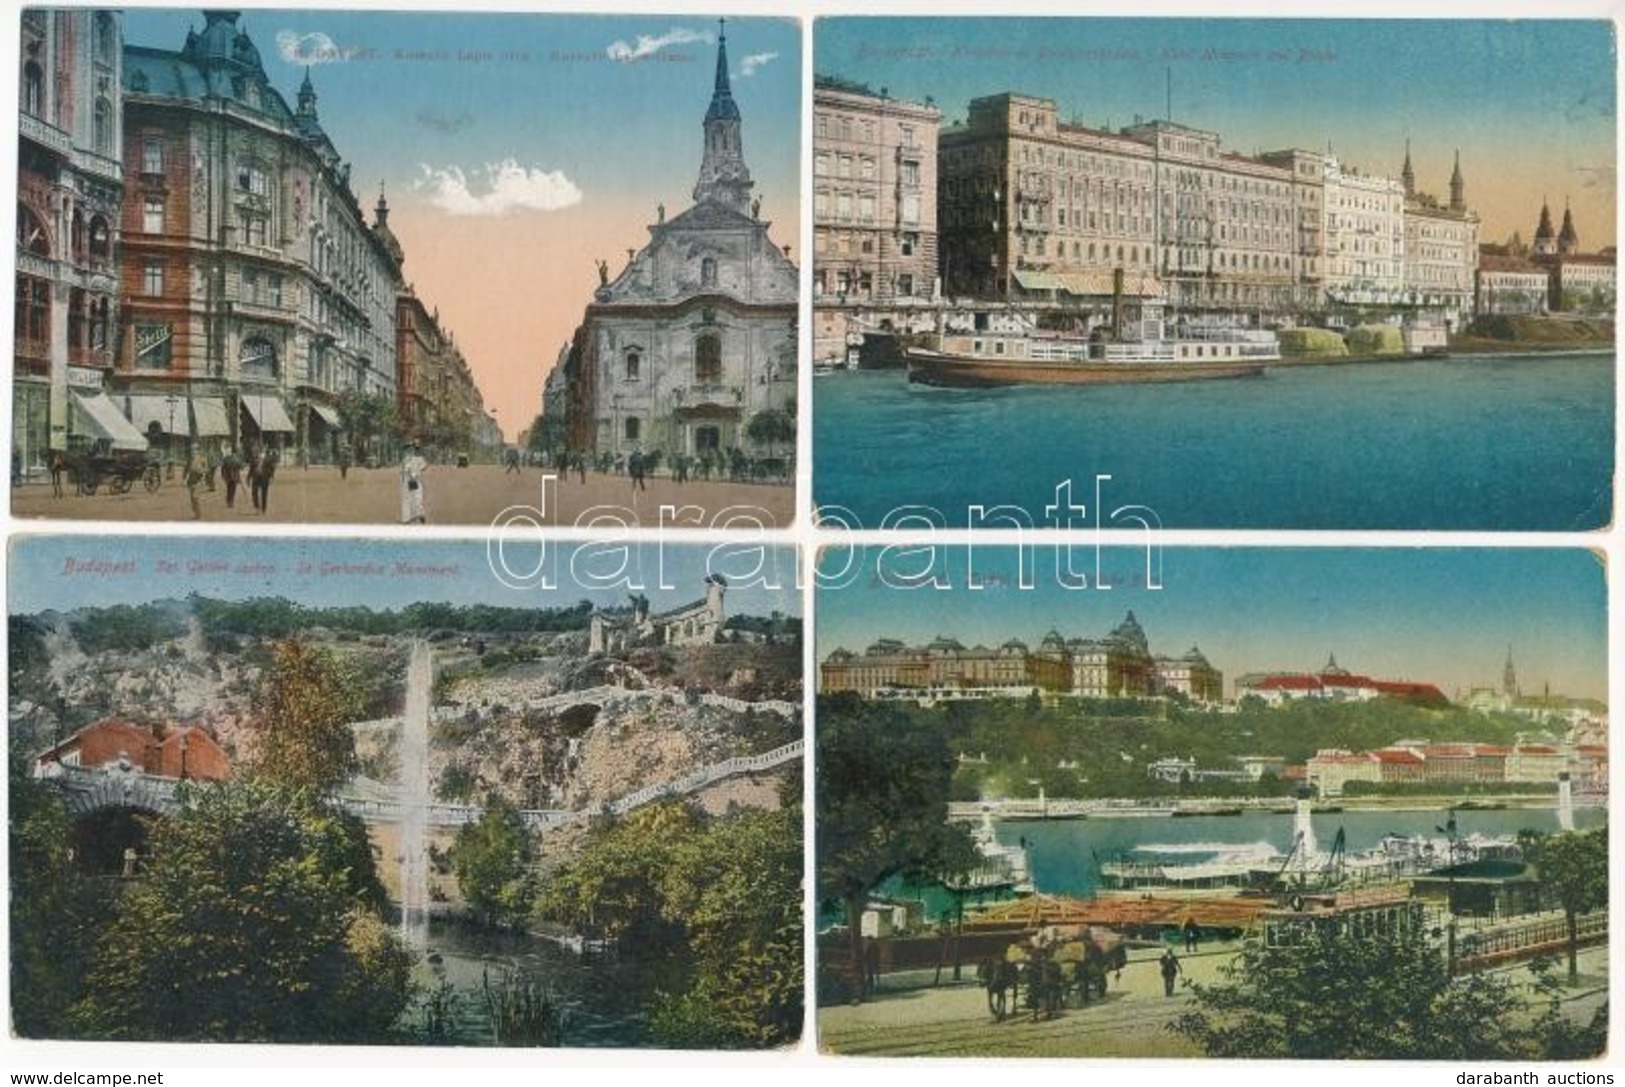 ** * Budapest - 20 Db Főleg Régi Városképes Lap / 20 Mainly Pre-1945 Town-view Postcards - Unclassified